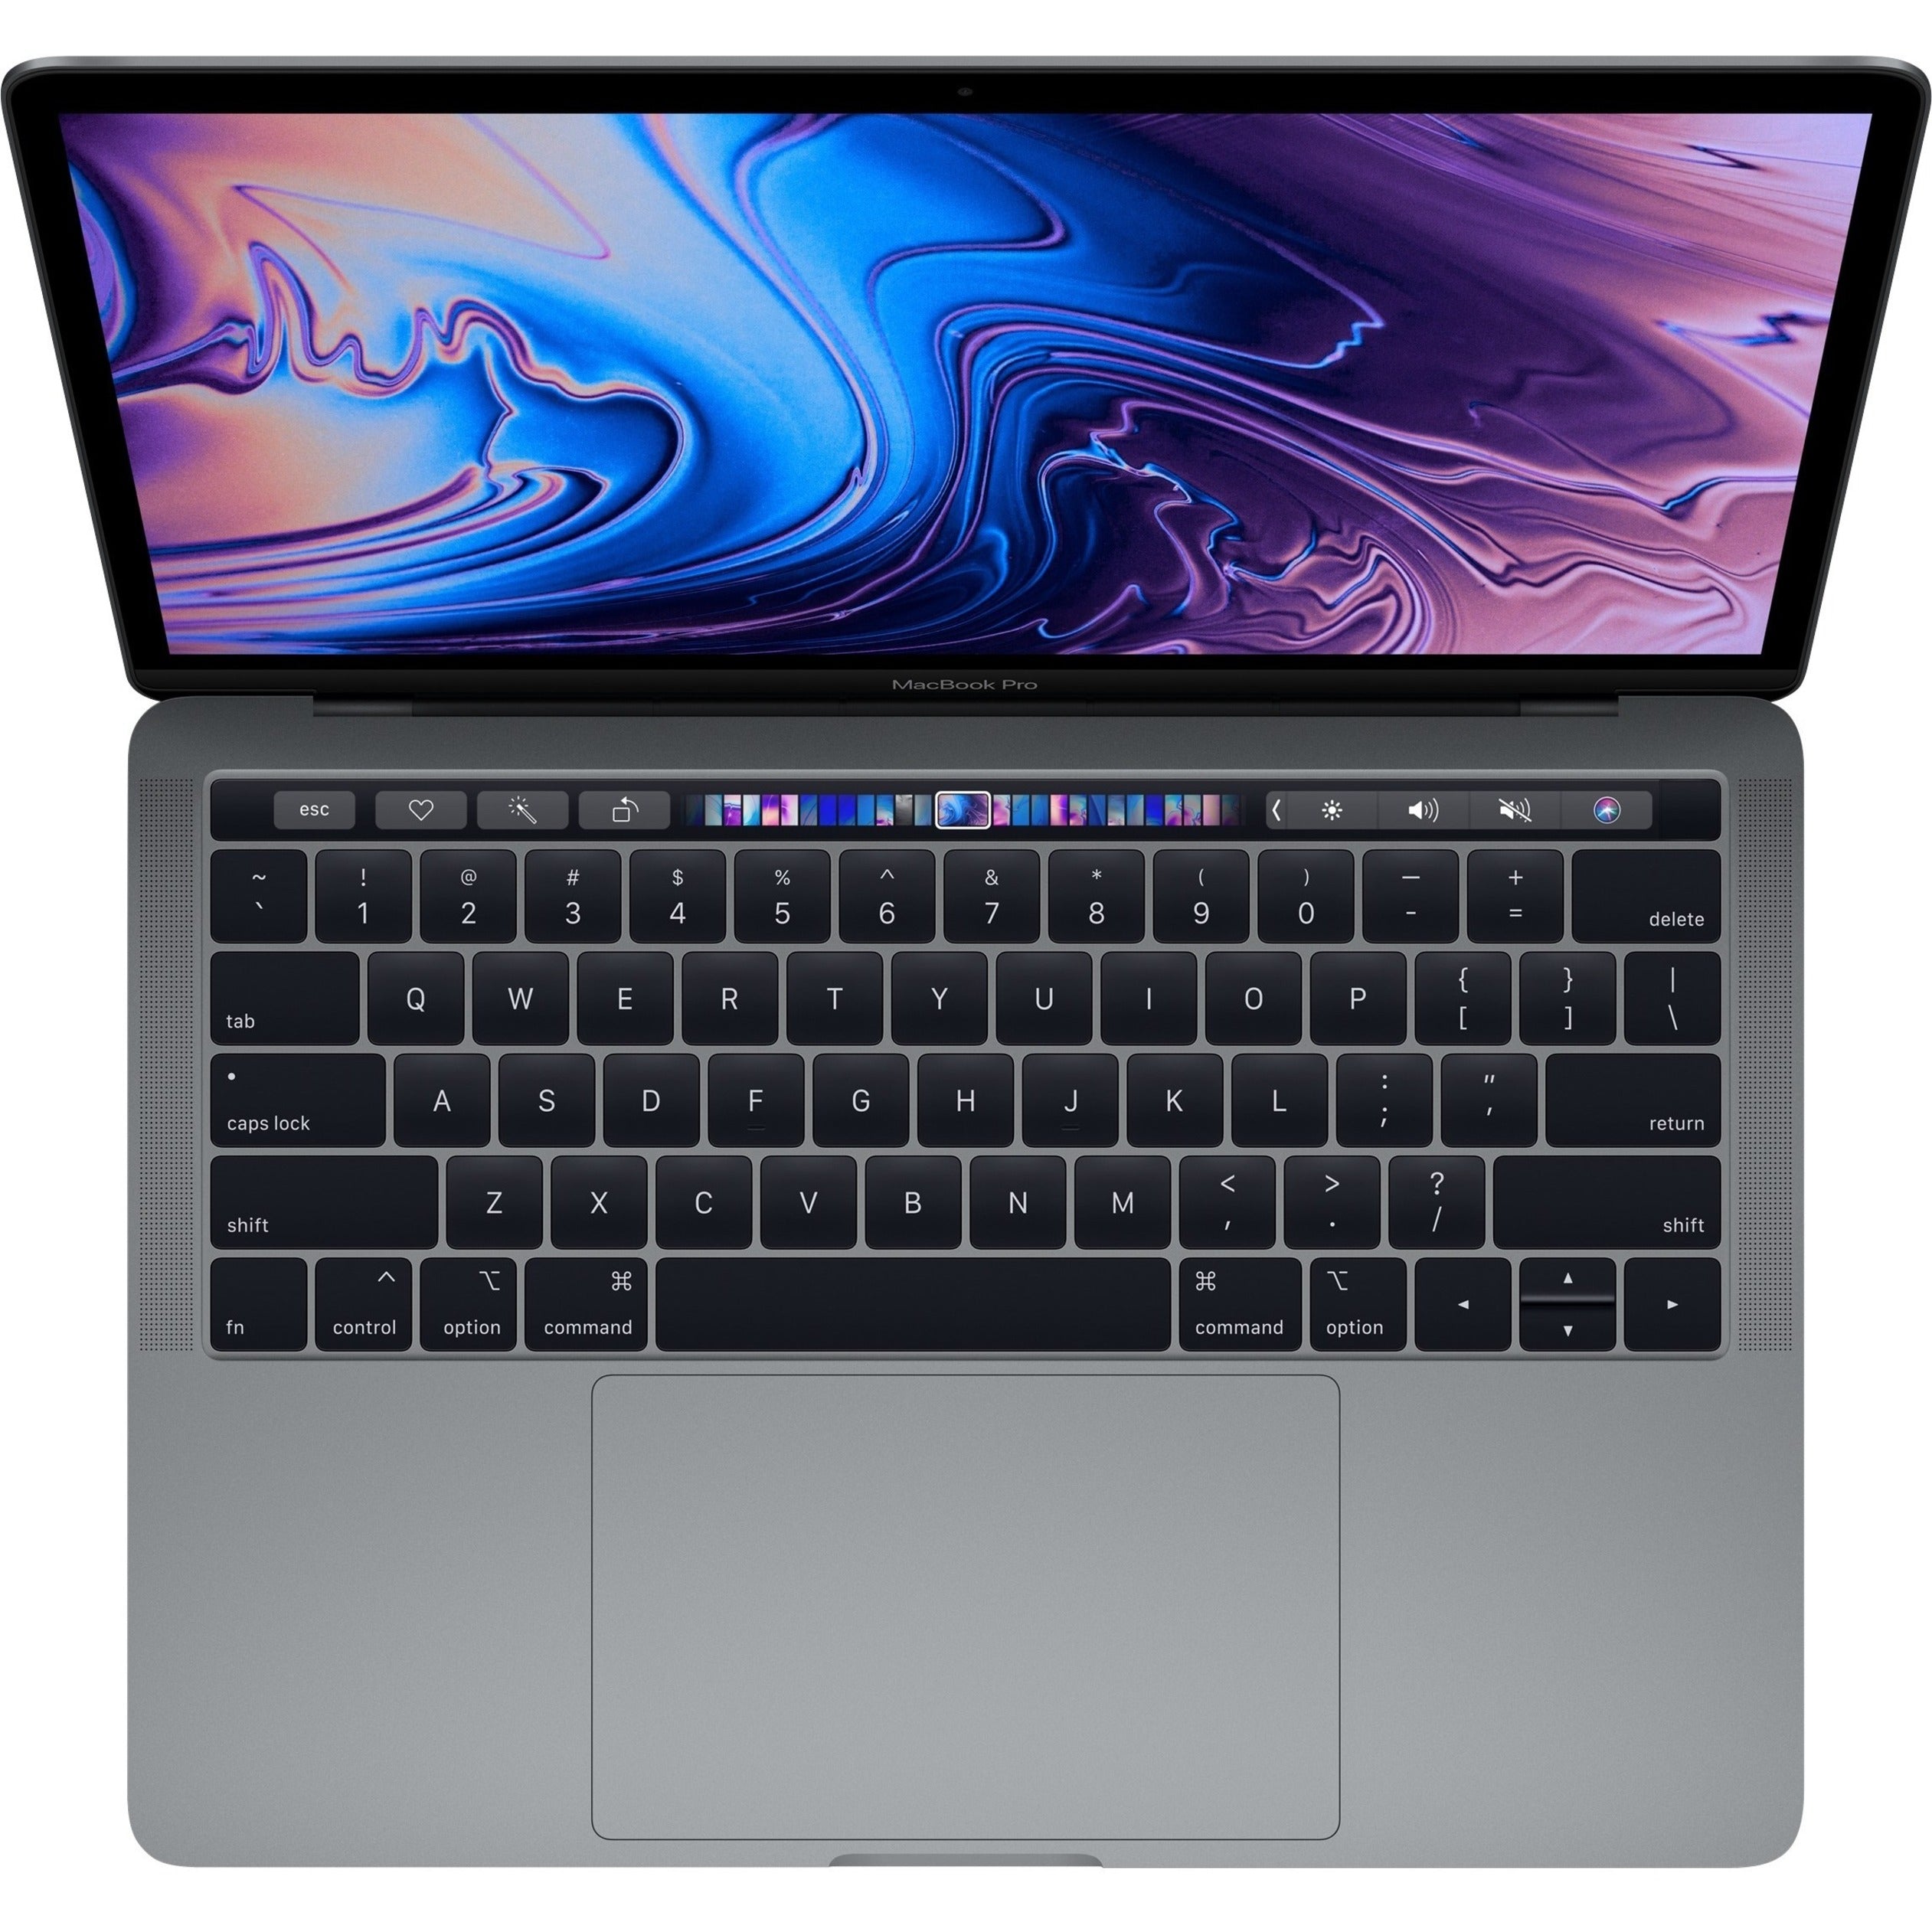 Apple MV902LL/A MacBook Pro 15.4 Notebook, Intel Core i7, 16GB RAM, 256GB SSD, Radeon Pro 555X